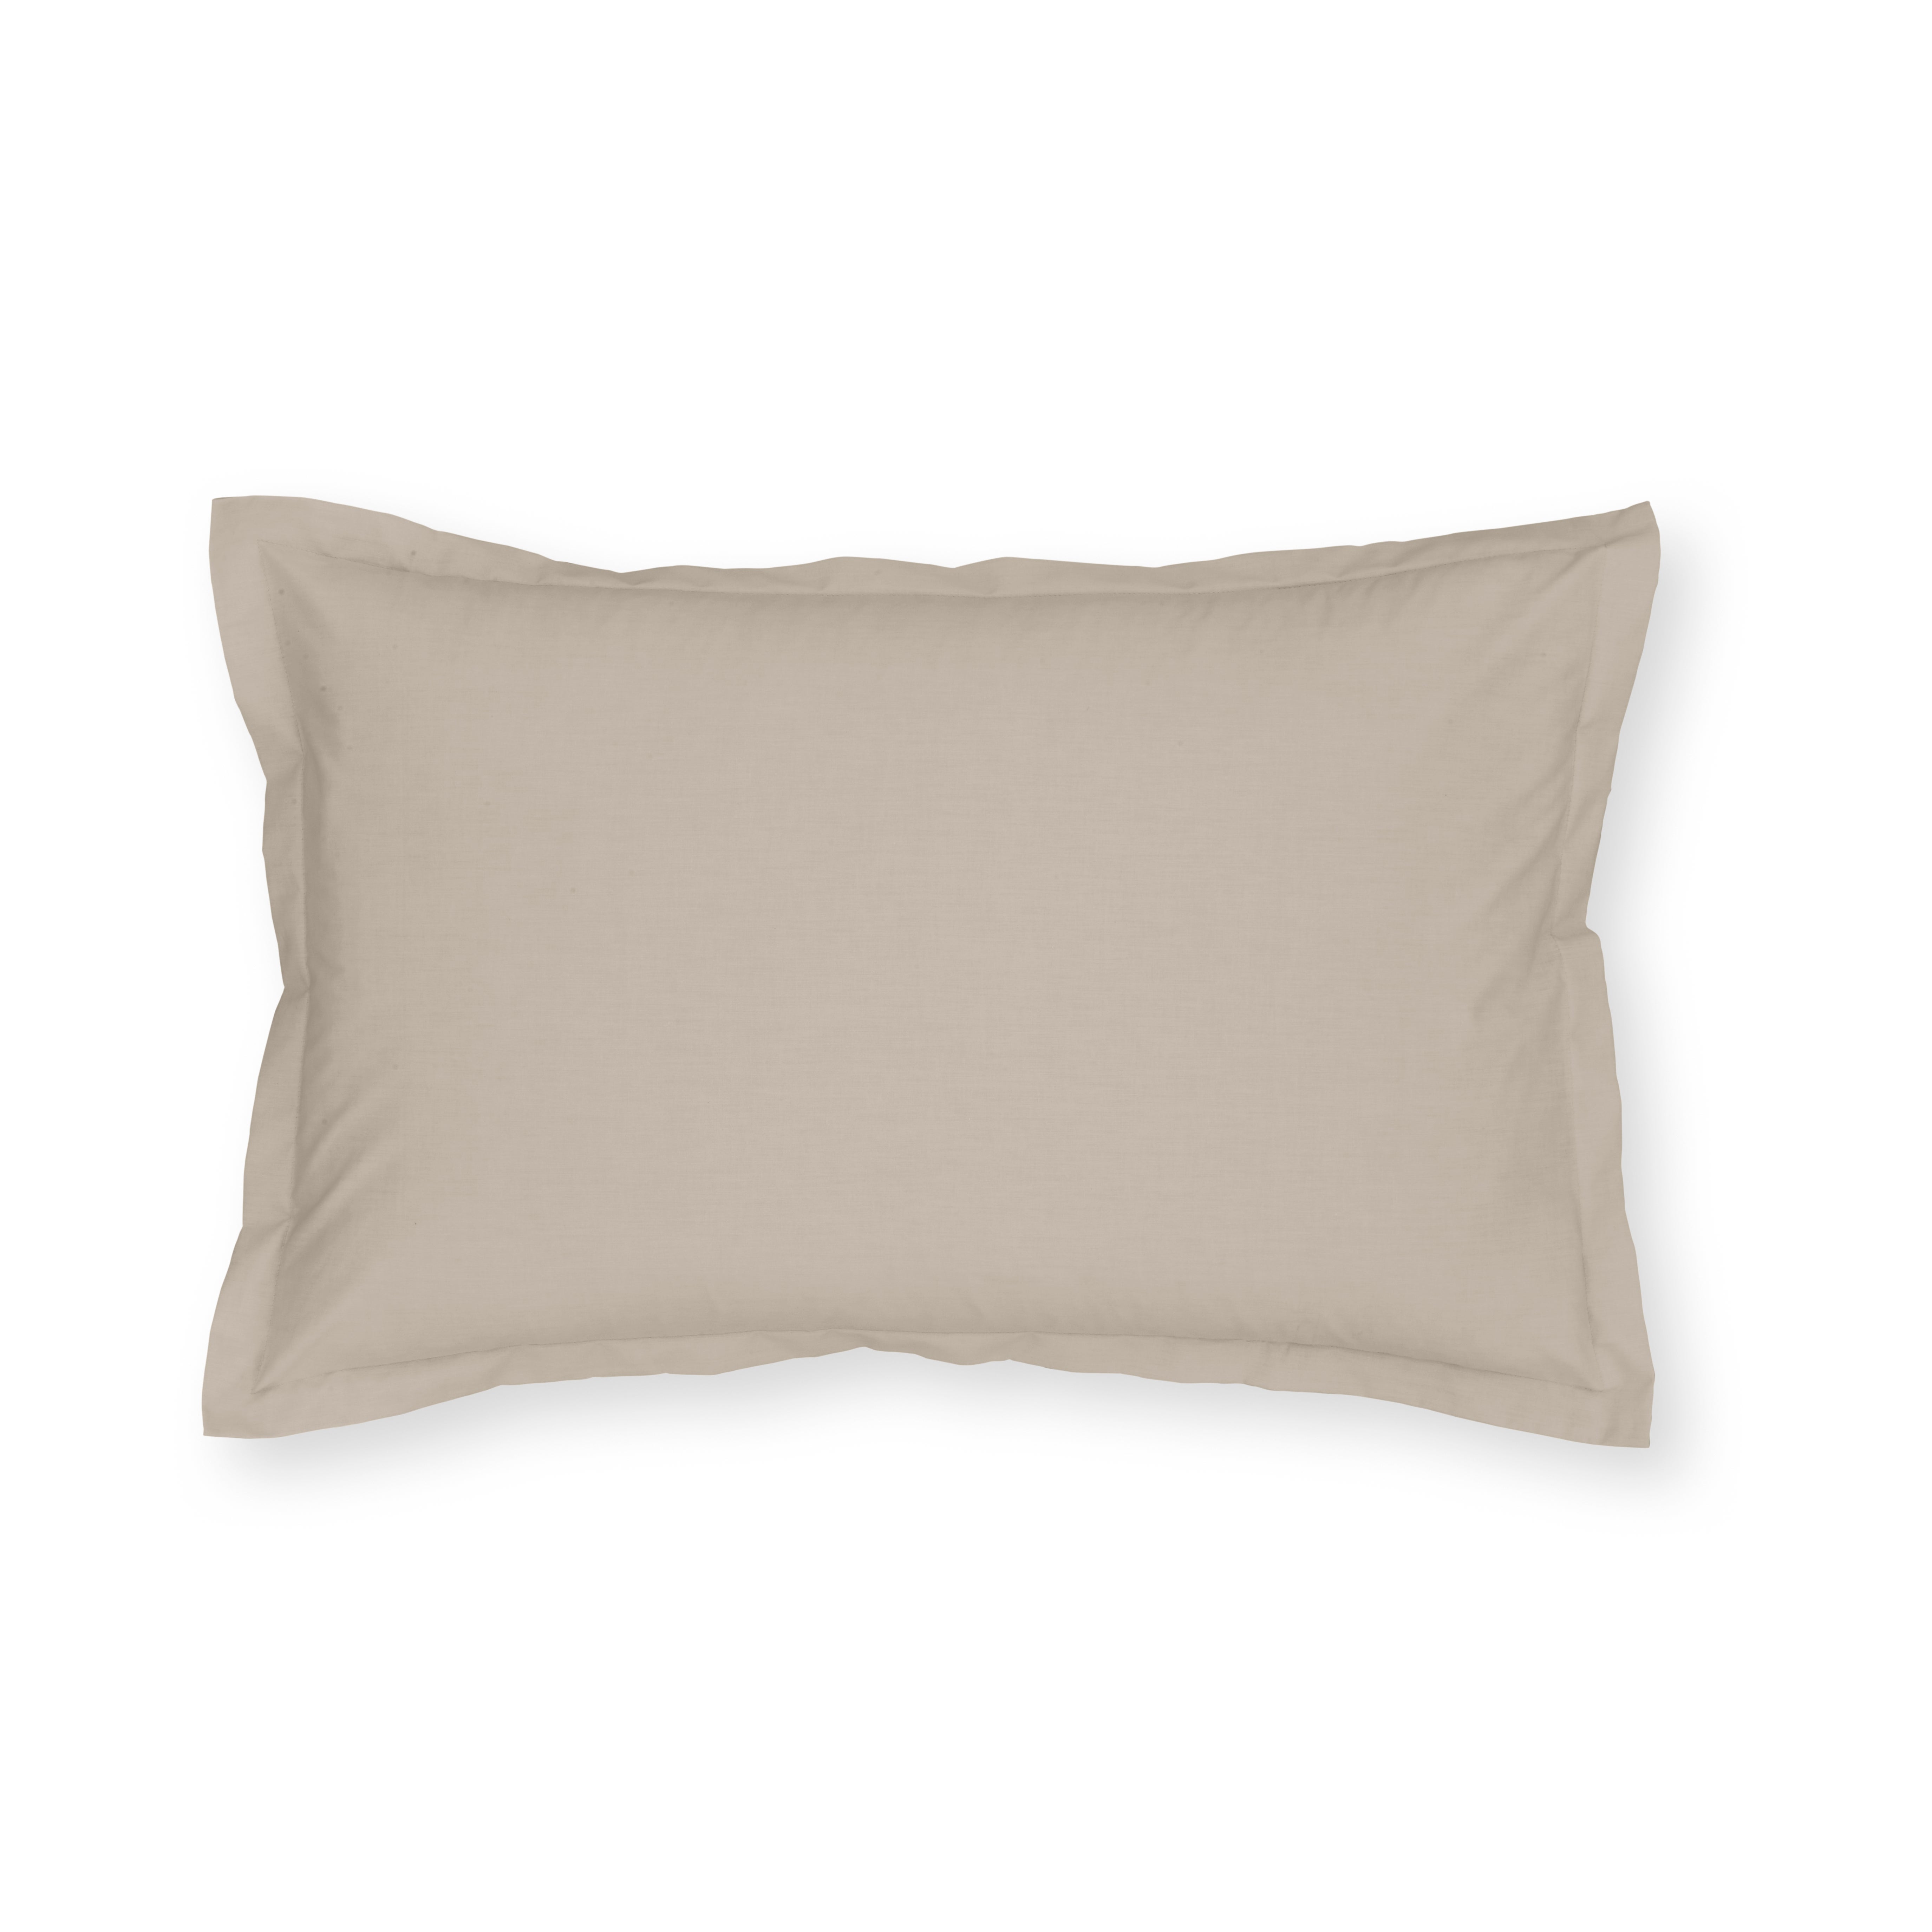 Pure Cotton Oxford Pillowcase